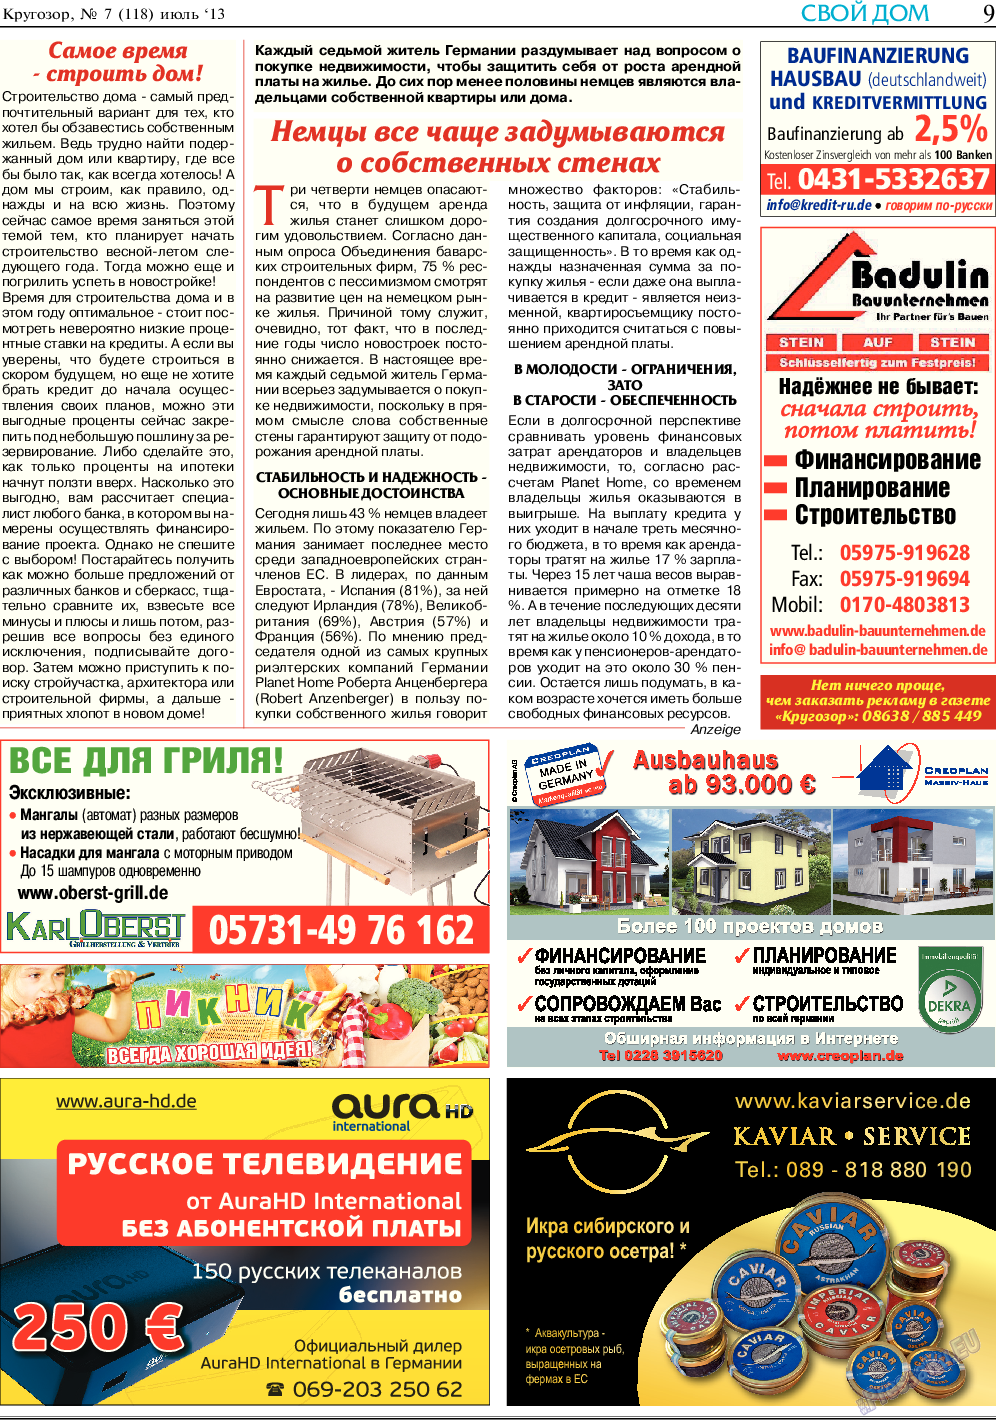 Кругозор, газета. 2013 №7 стр.9